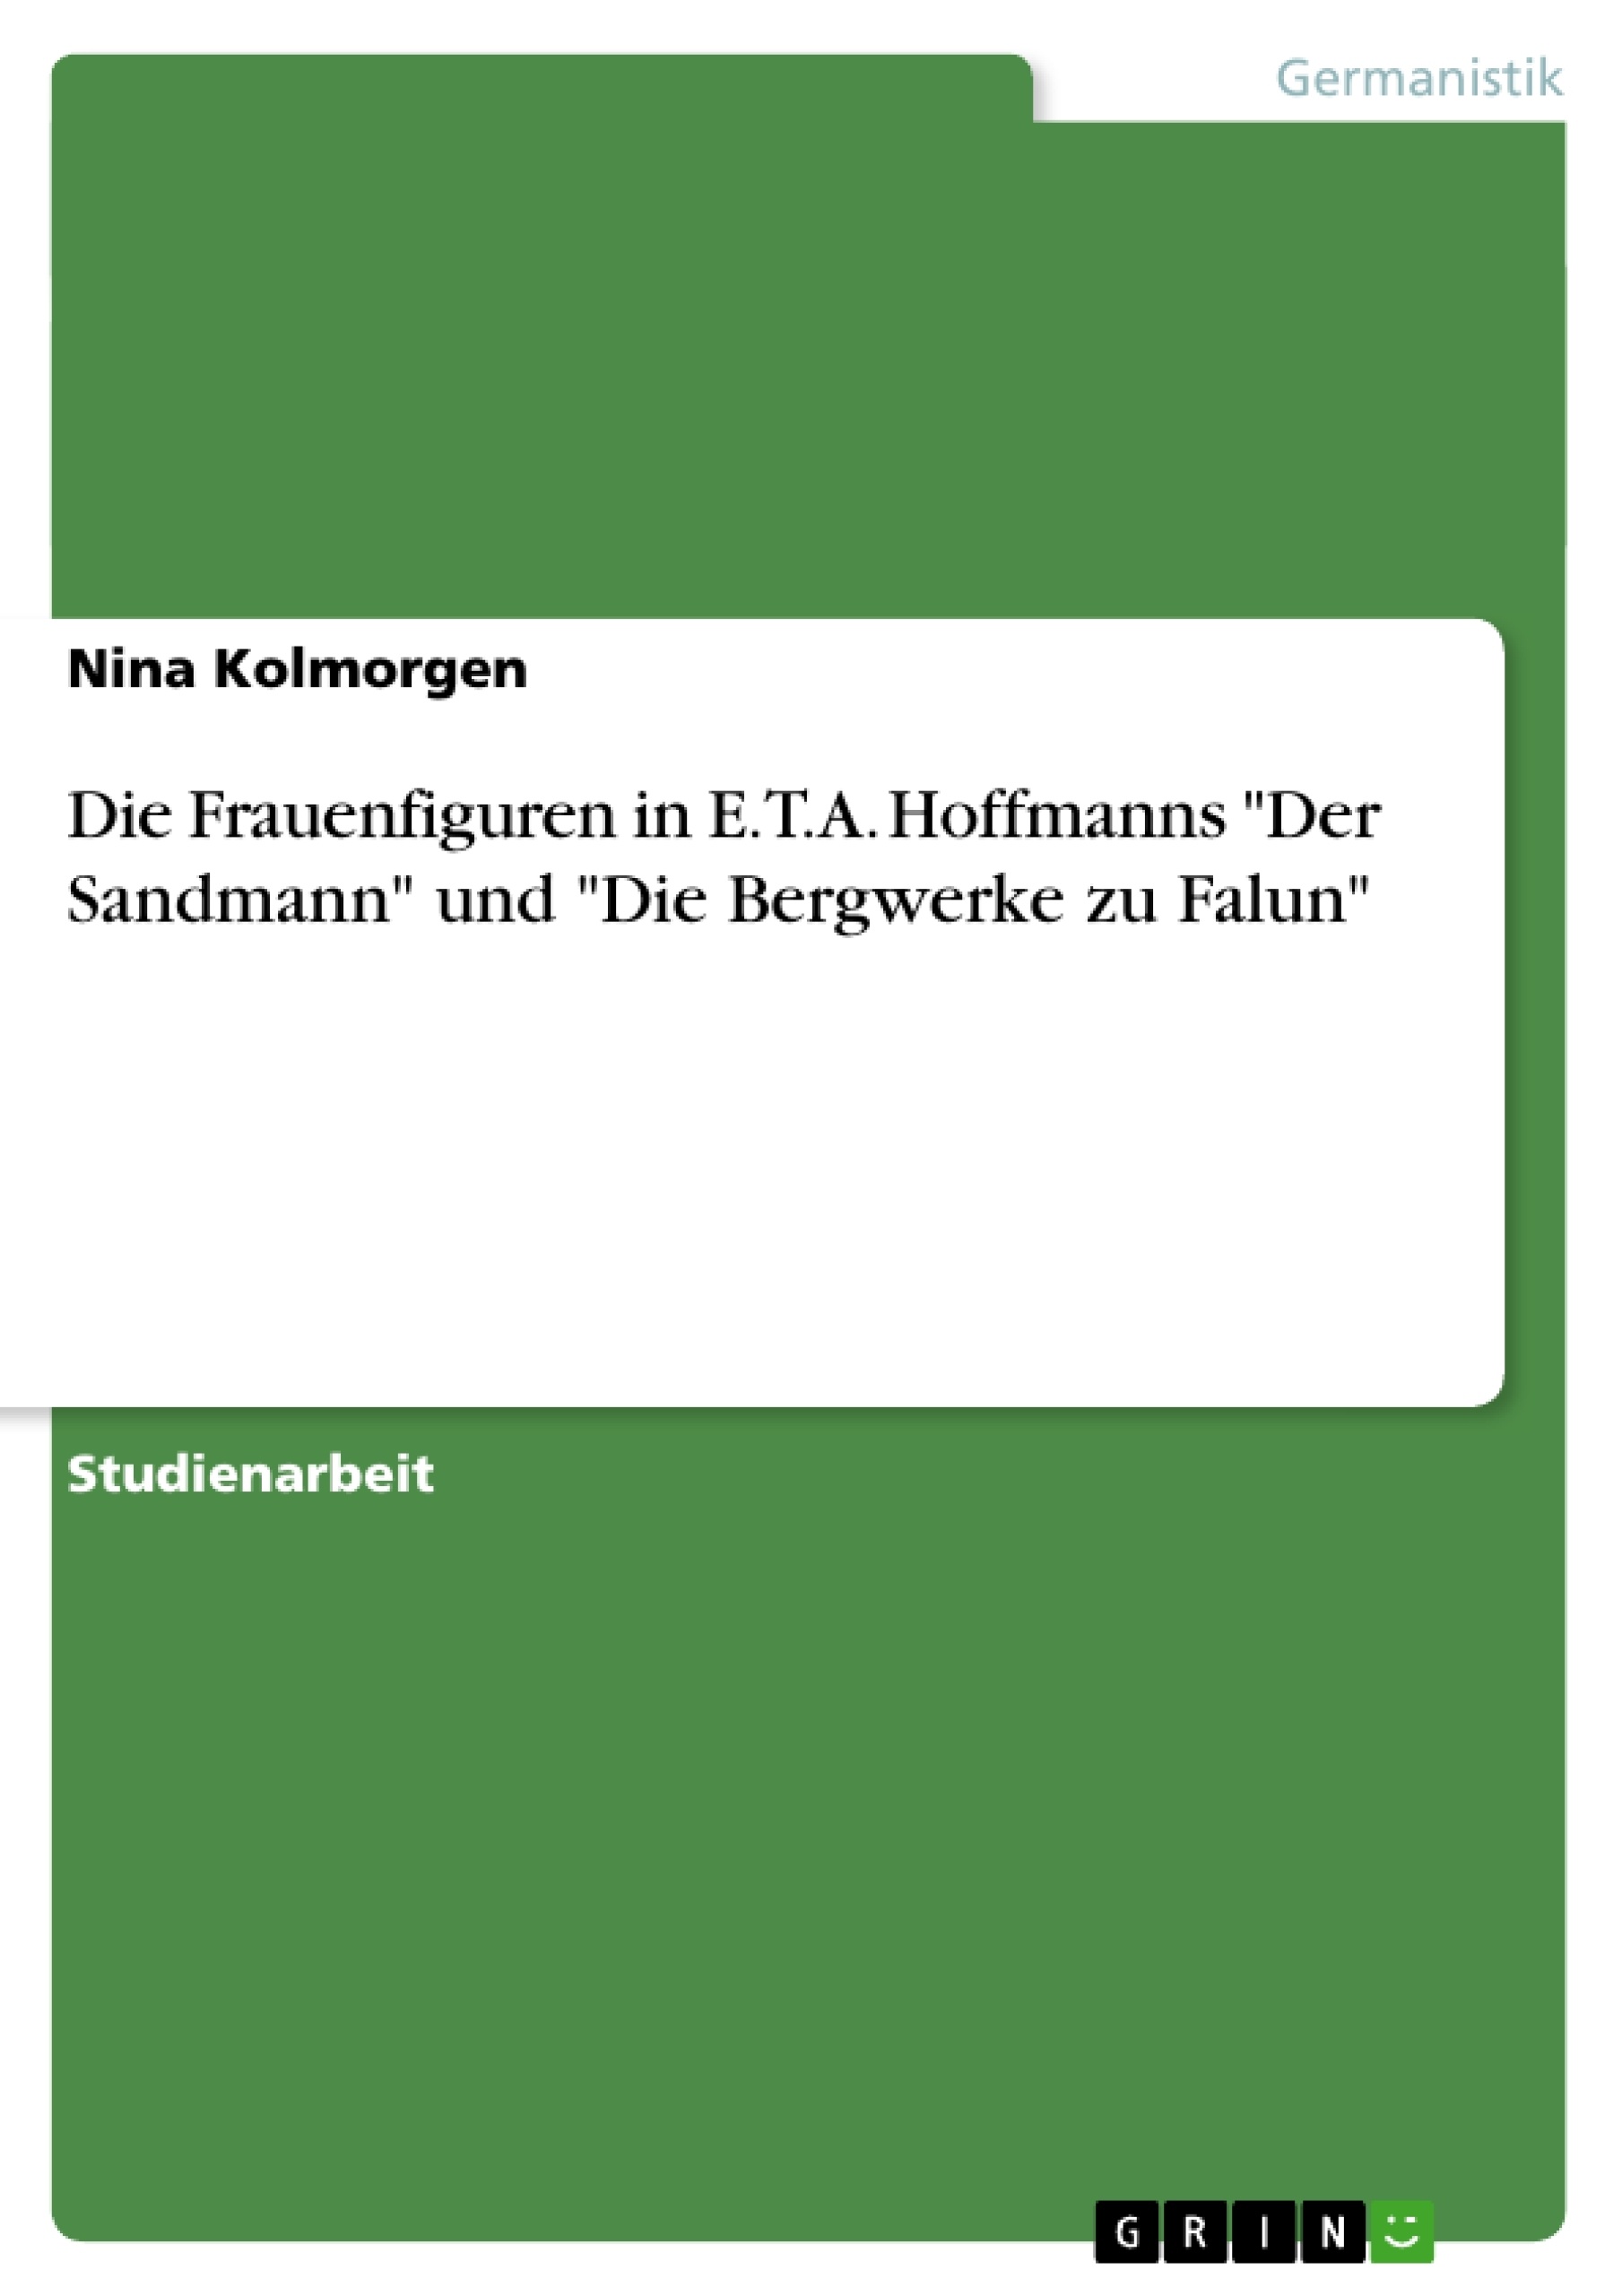 Title: Die Frauenfiguren in E.T.A. Hoffmanns "Der Sandmann" und "Die Bergwerke zu Falun"